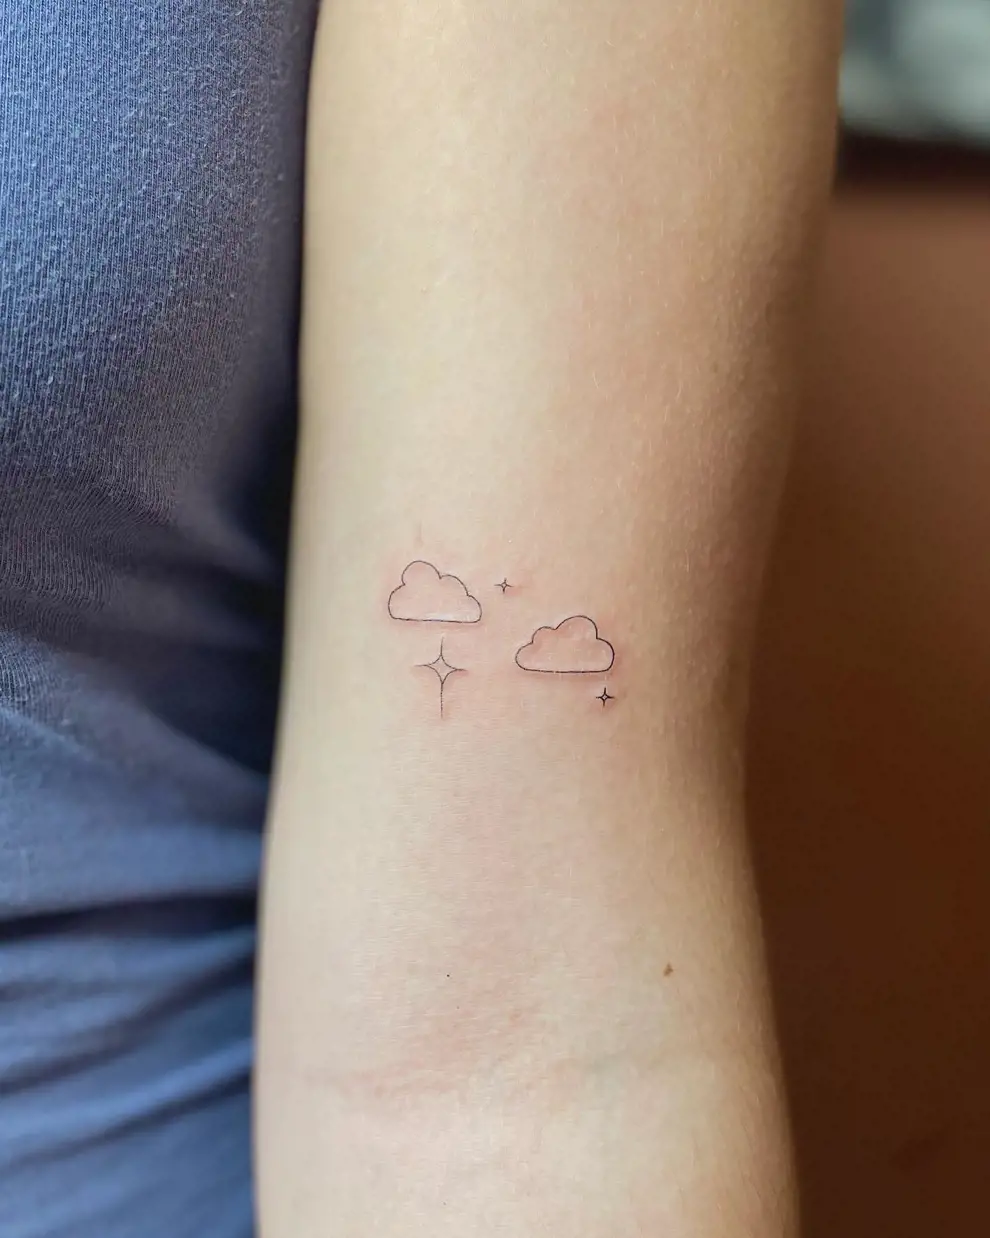 Tatuajes con significado pequeños: nubes